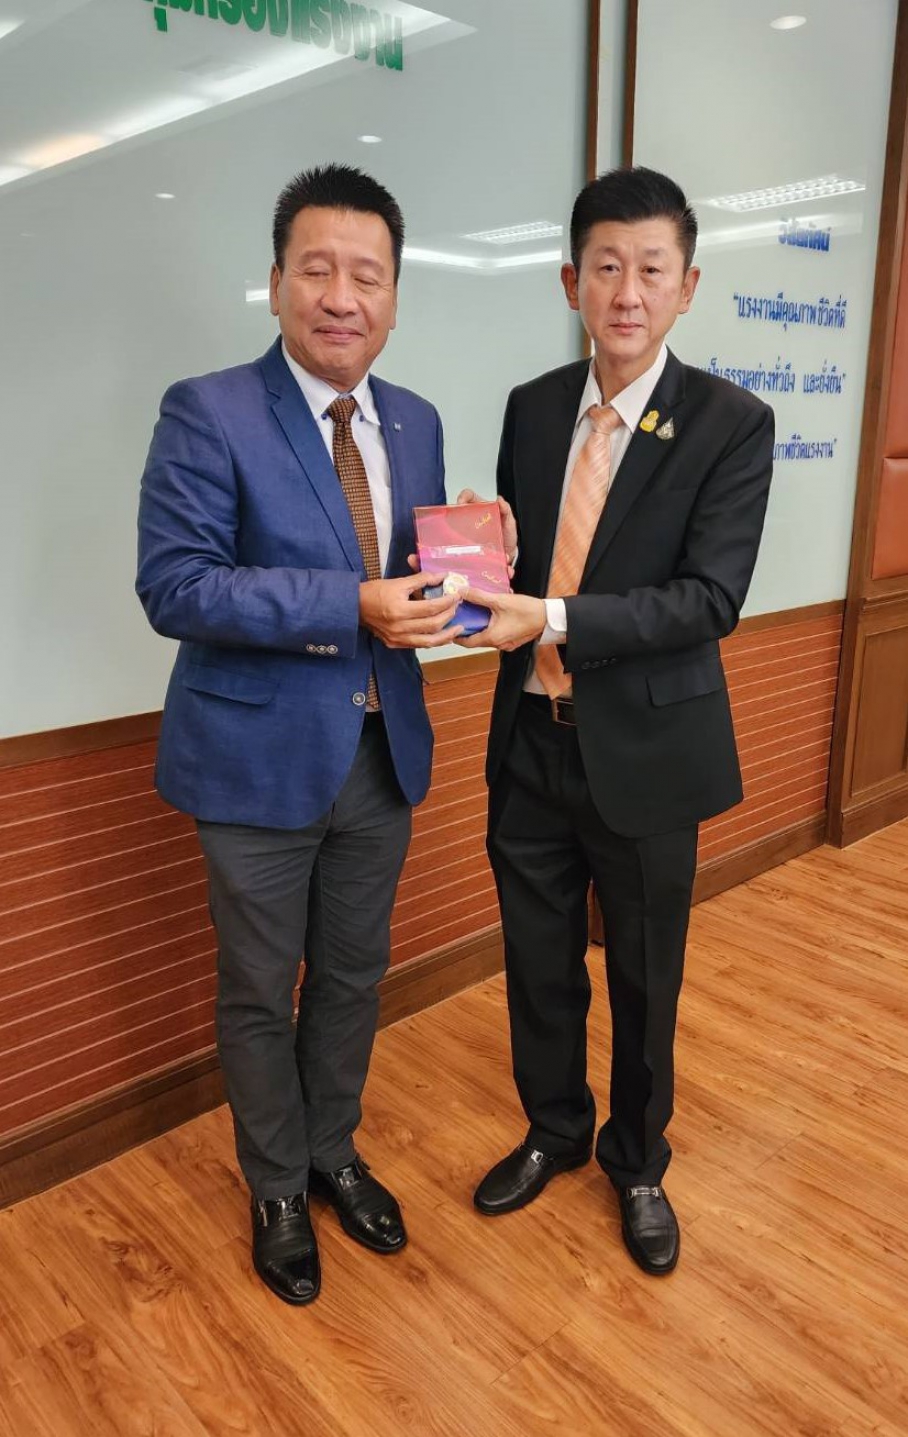 ท่านเลขาธิการสภาองค์การนายจ้างธุรกิจไทย ได้มอบของขวัญและของที่ระลึกให้กับทางท่านบุญชอบ สุทธมนัสวงษ์ ปลัดกระทรวงแรงงาน พร้อมคณะ